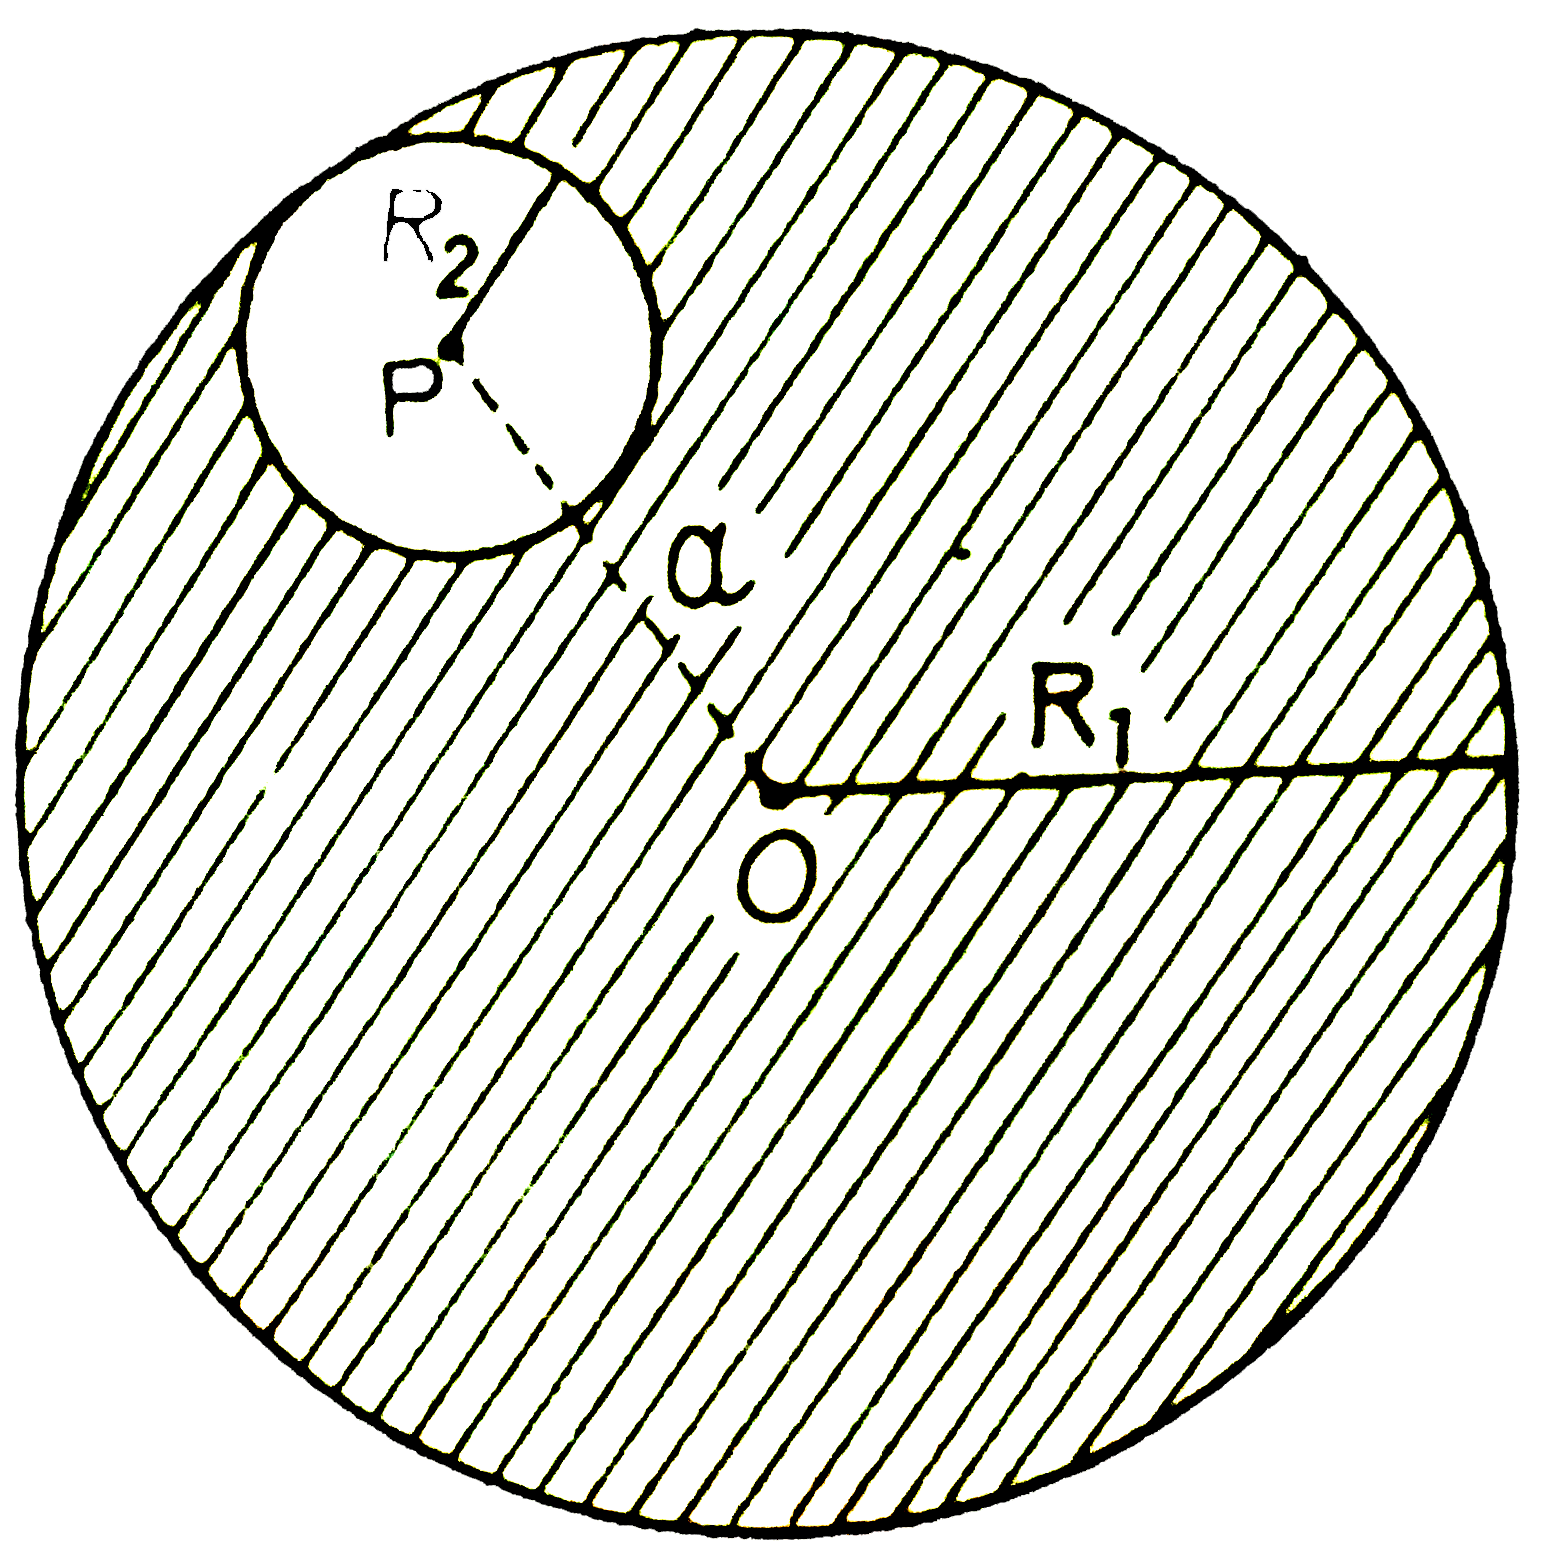 त्रिज्या R(1) का एकसमान आवेश घनत्व का गोलाकार आवेश मूल बिंदु O पर केंद्रित है इस  वितरण में त्रिज्या R(2) तथा P पर केंद्रित एक गोलाकार गुहिका जहाँ दूरी OP a=R(1)-R(2)  है बनाई जाती है  यदि गुहिका  के अंदर स्थित hat  r पर विधुत क्षेत्र hat E है तब सही कथन है